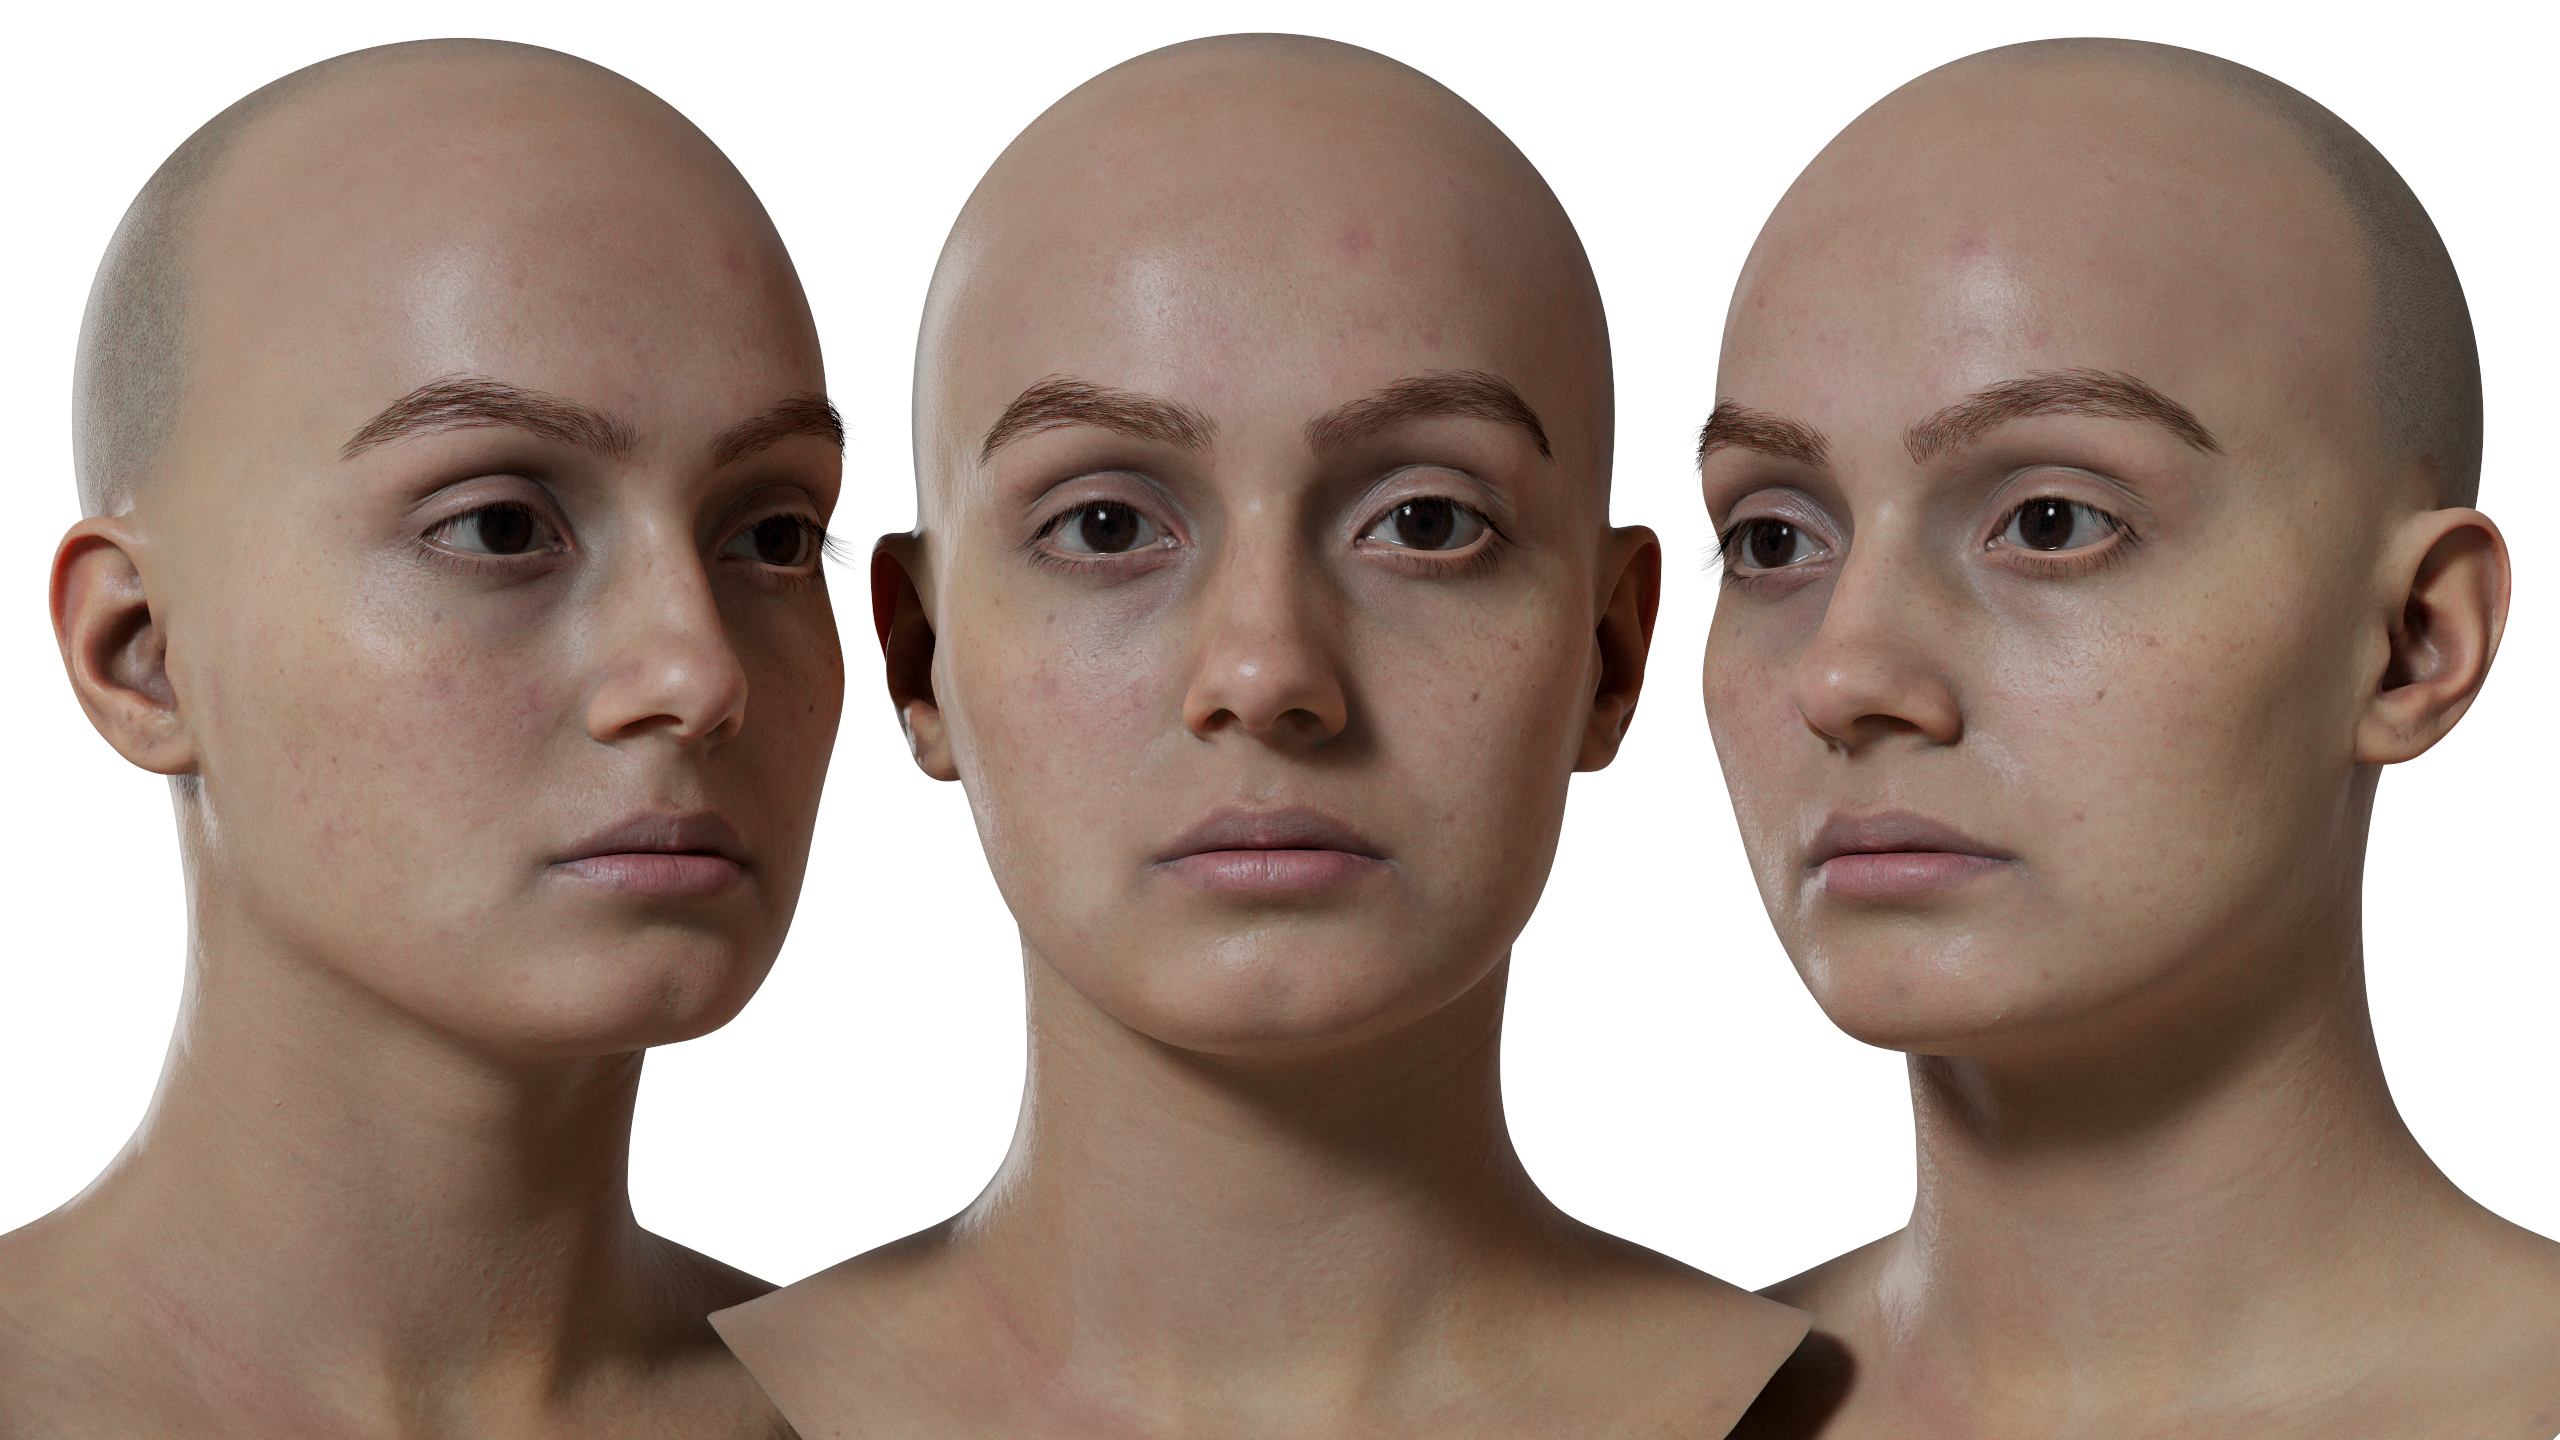 Female 3d face scan model download